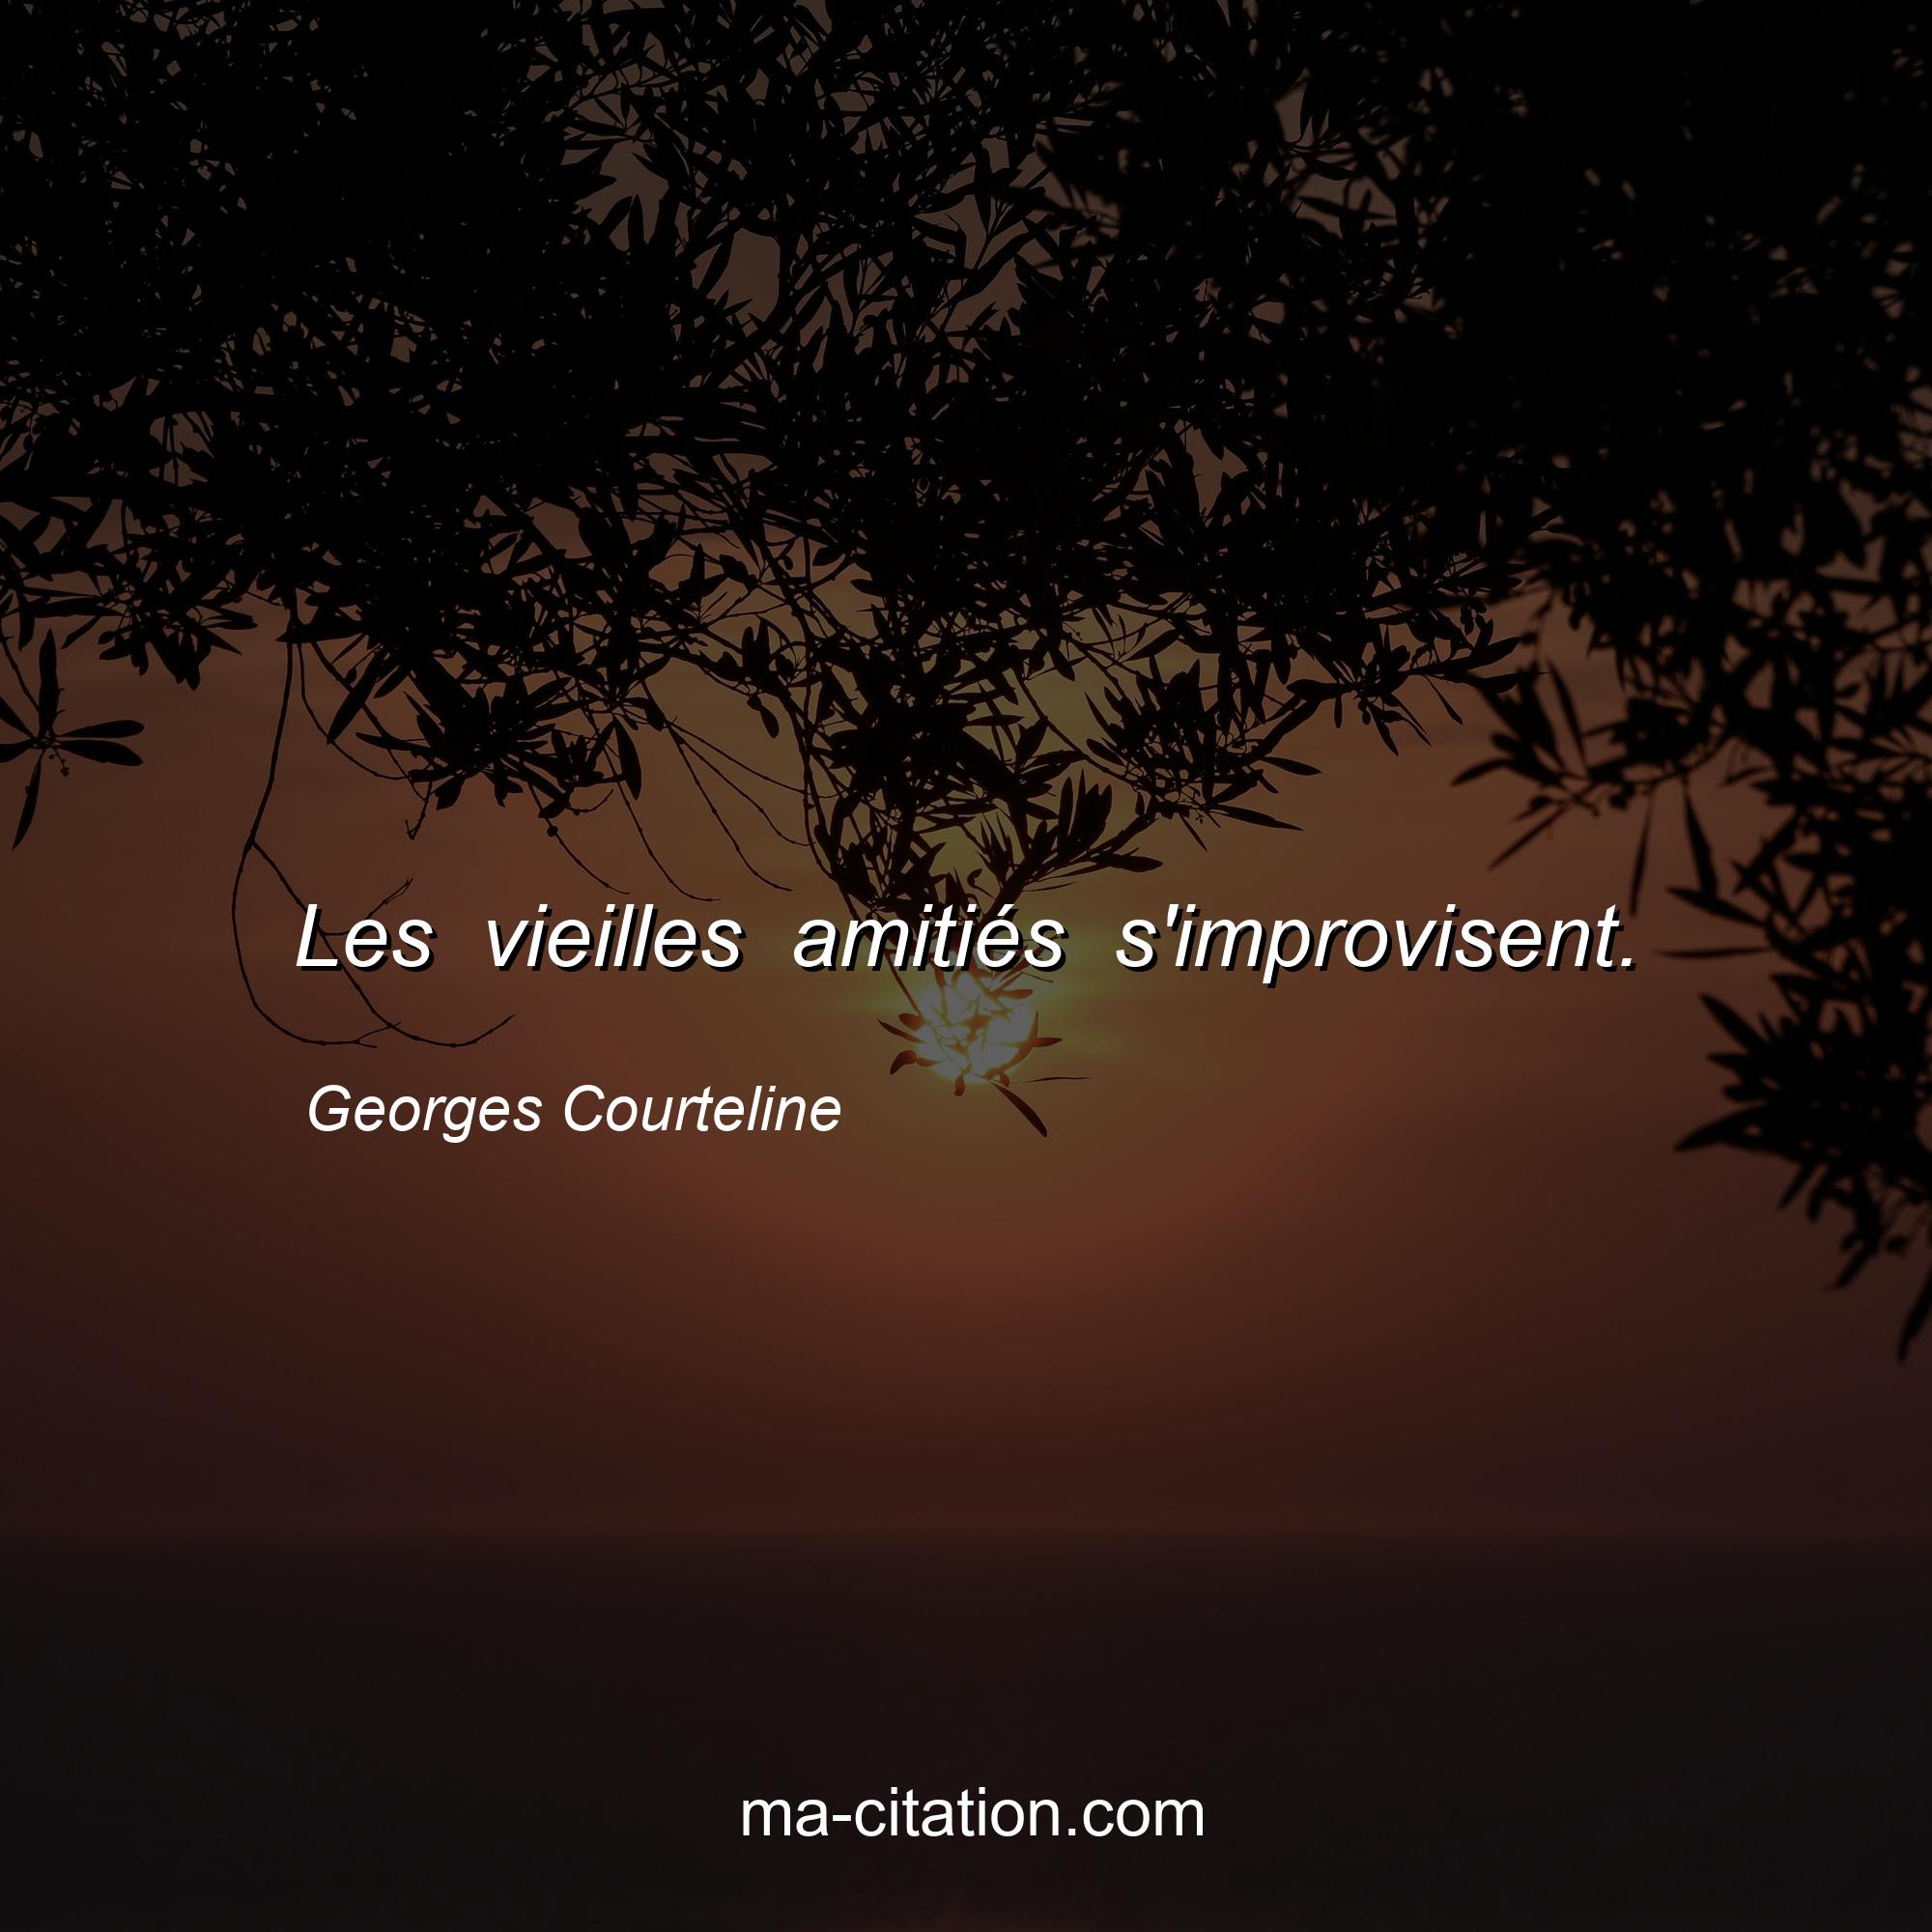 Georges Courteline : Les vieilles amitiés s'improvisent.